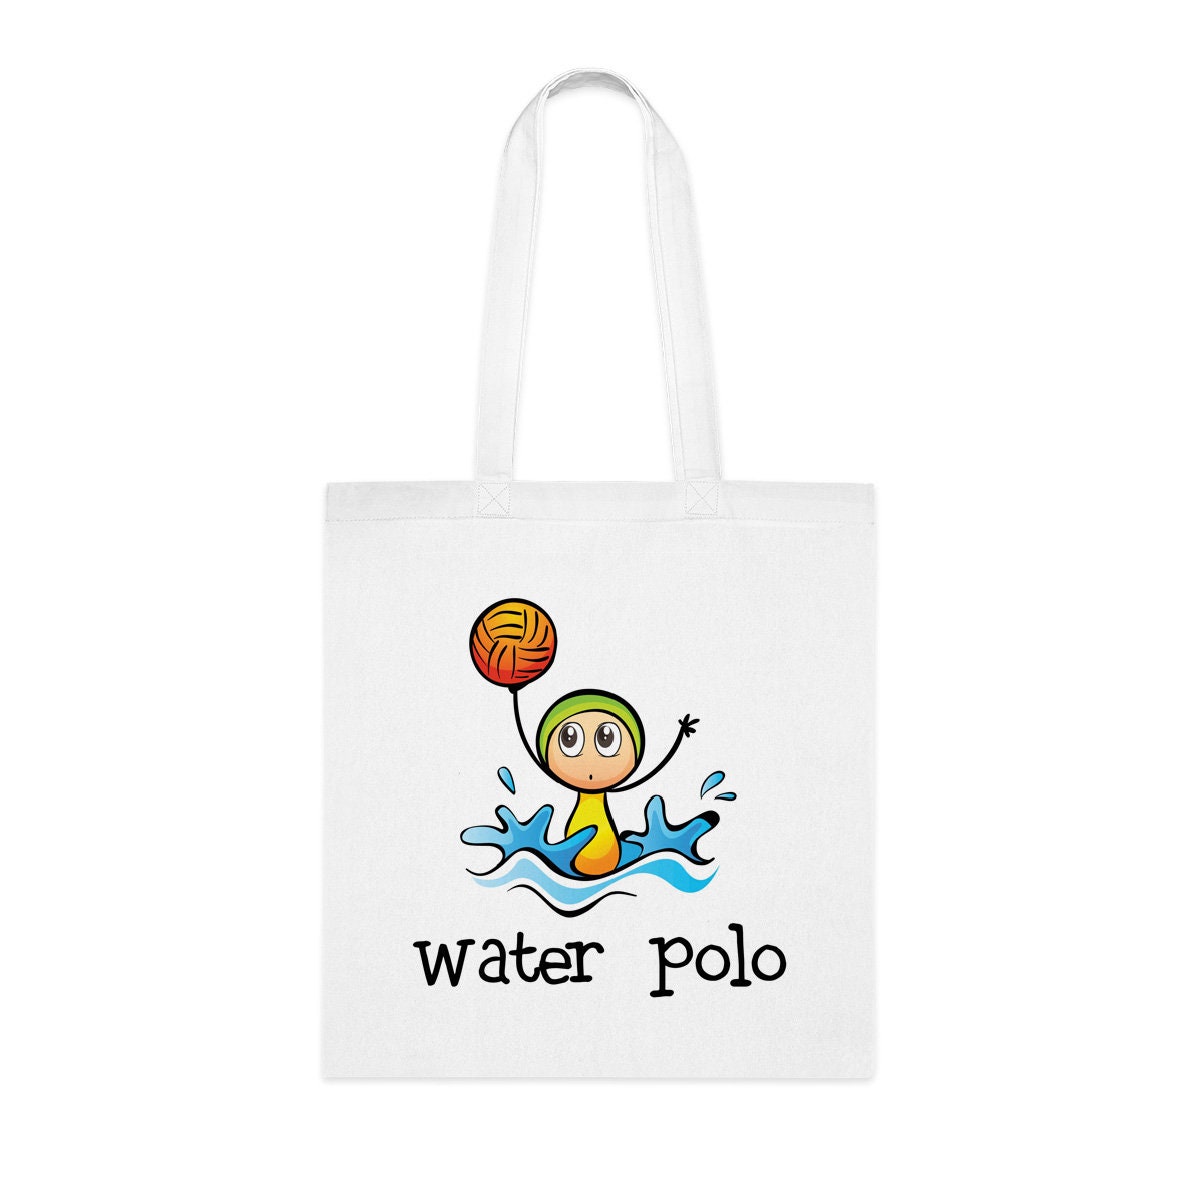 Wasser Polo Bag Tag, Kofferanhänger, Wasserball-Geschenk-Idee, Wasser Polo  Team, Schwimmer, Schwimmen Geschenk, Swim Trainer - .de